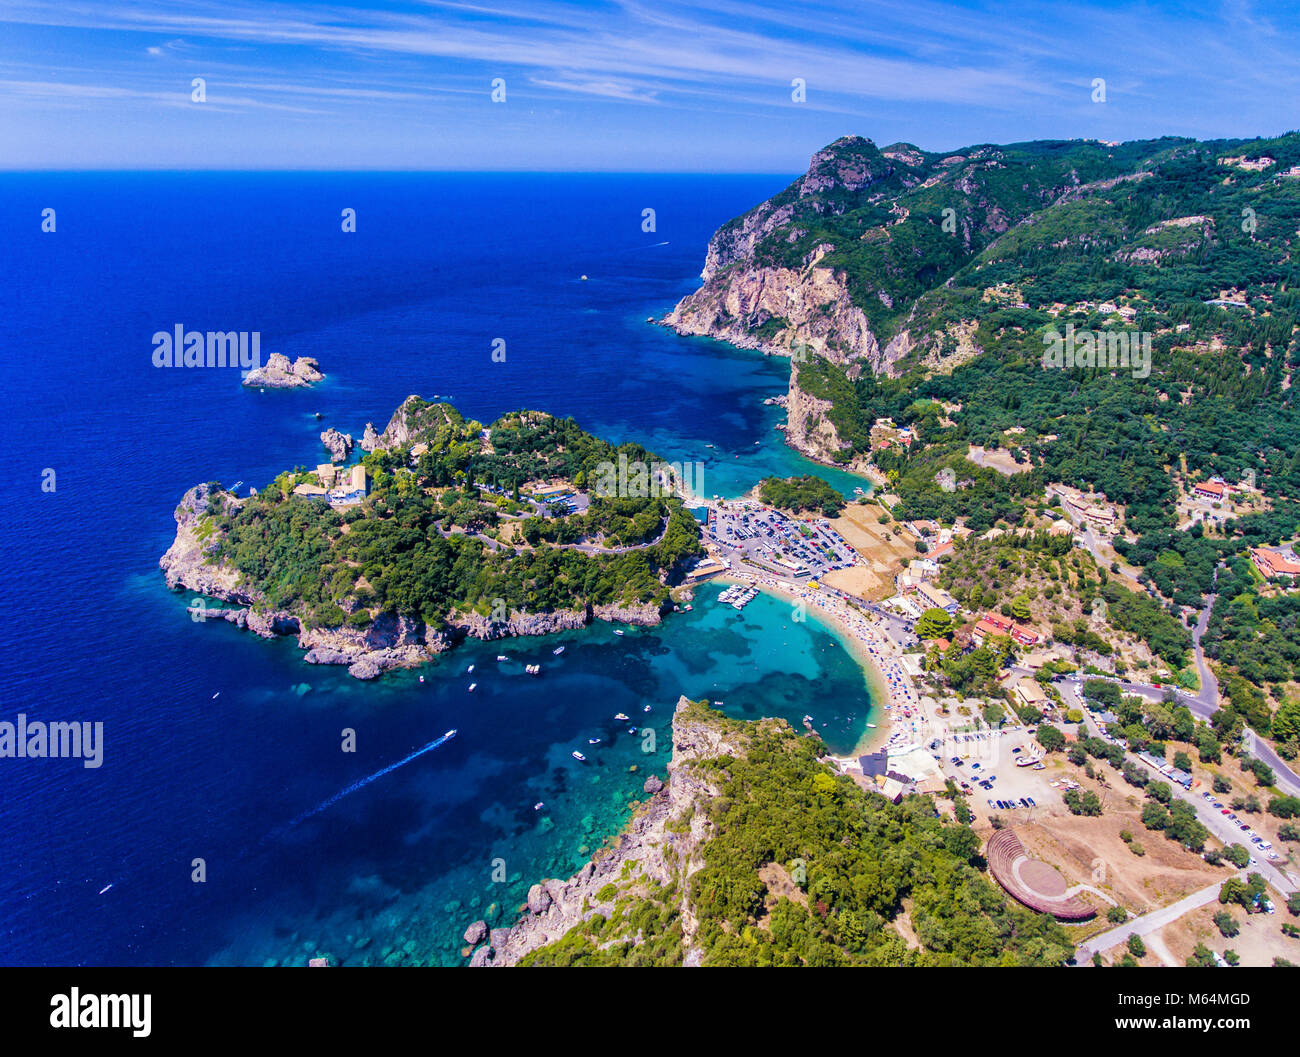 Paleokastrita Bucht und Klippen mit klarem, blauen Wasser, von oben gesehen. Wichtige Touristenattraktion auf der Insel Kerkyra, Korfu, Griechenland. Stockfoto